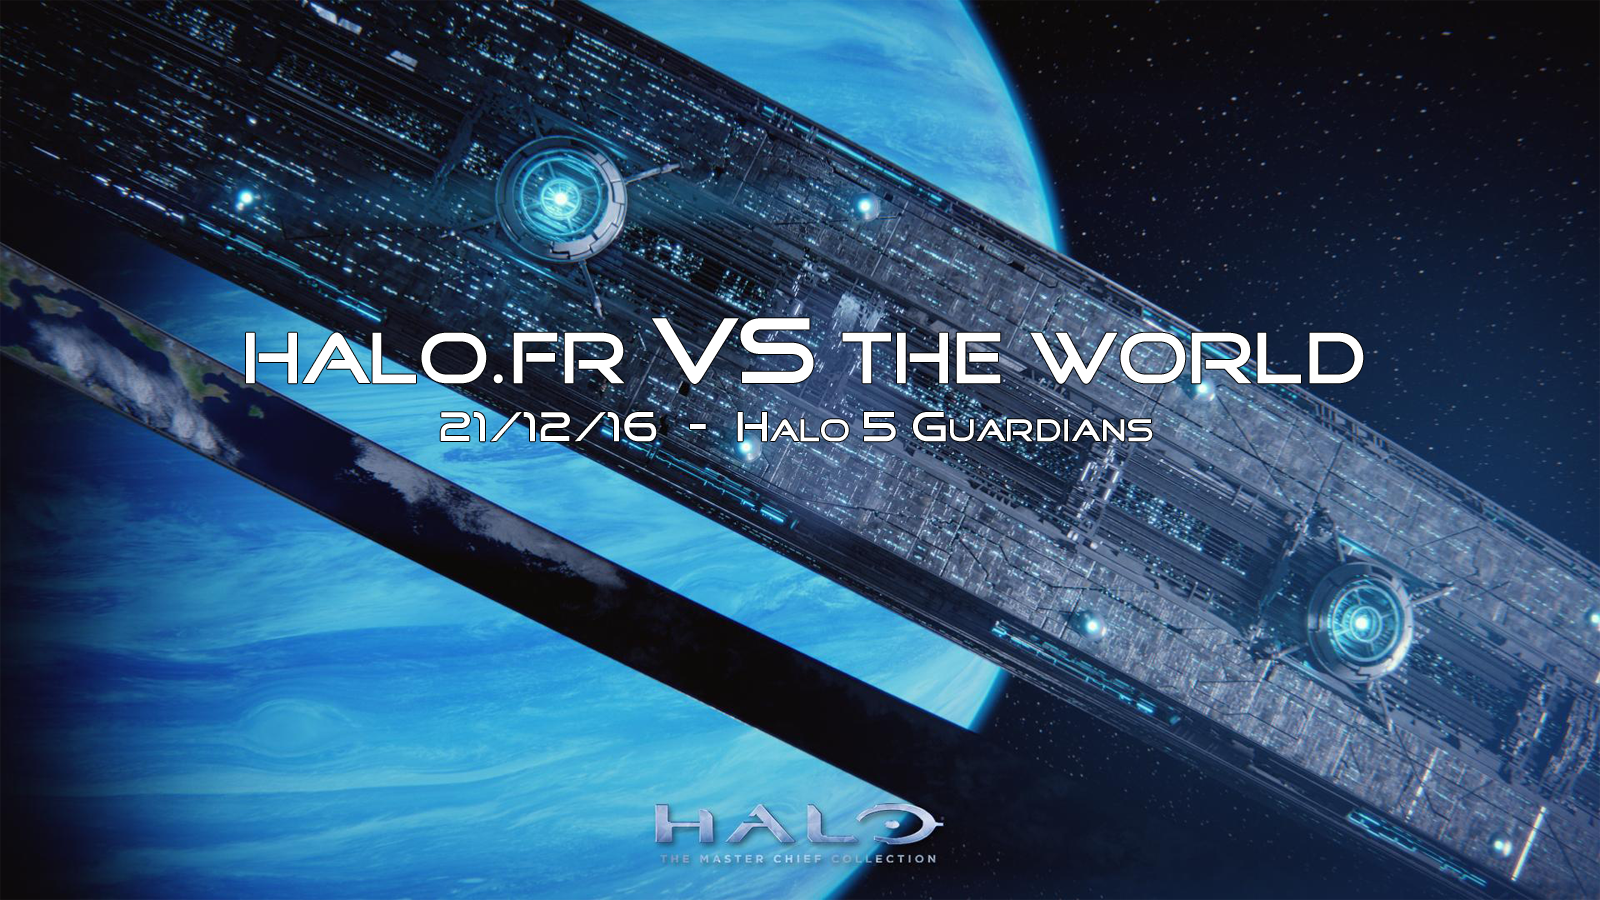 Halo.fr vs The World